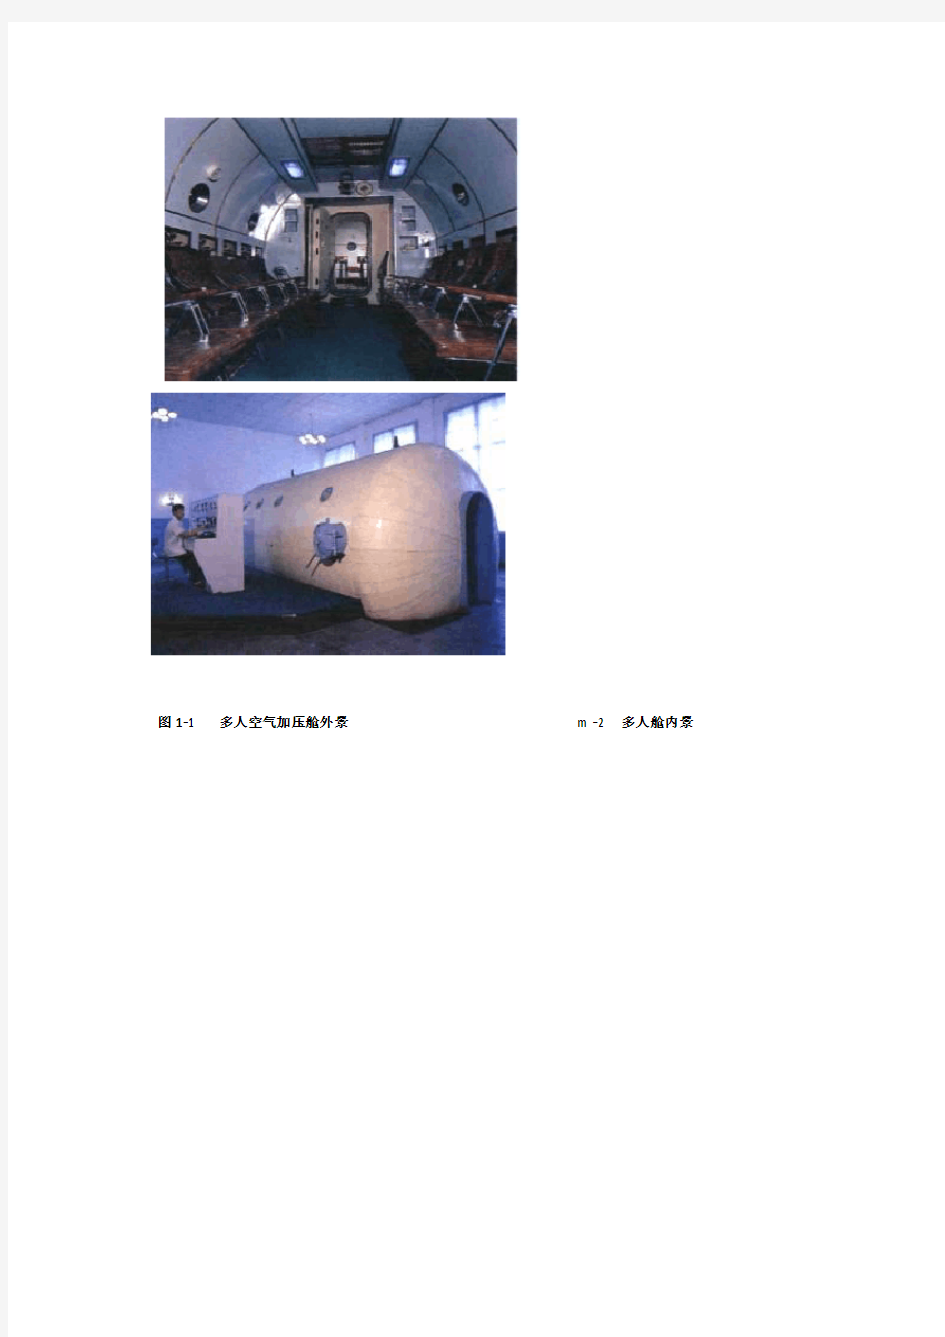 高压氧舱舱型分类及组成结构